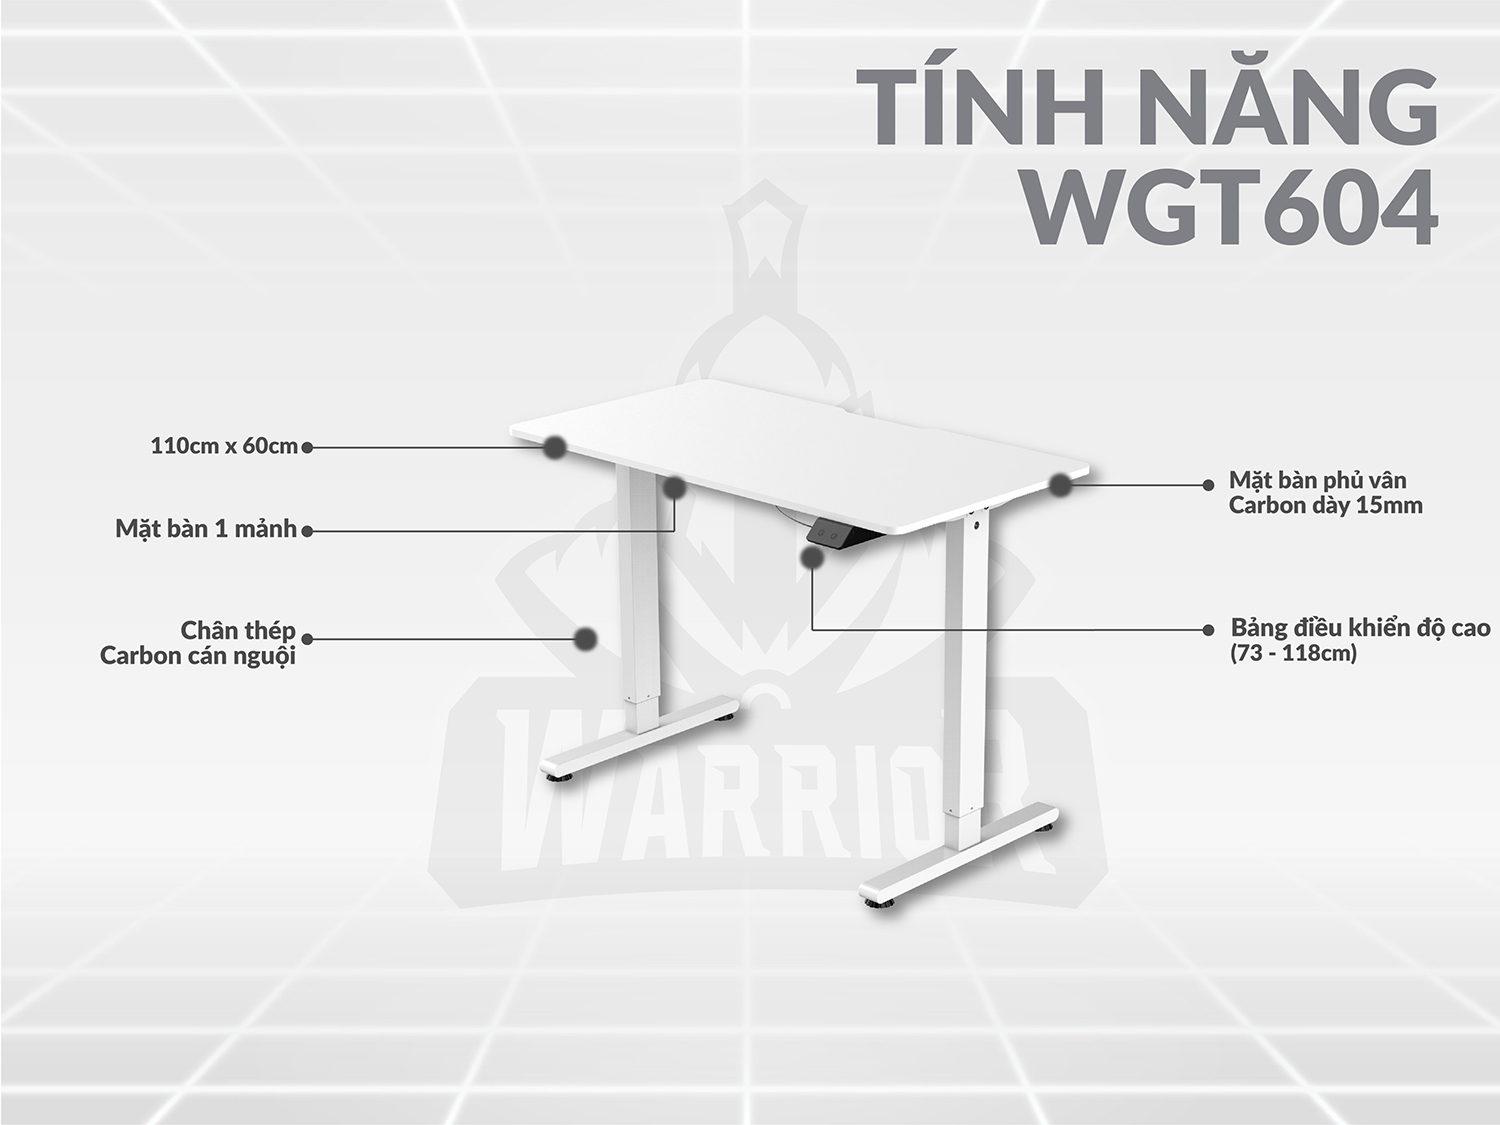 Tính năng của bàn nâng hạ WARRIOR WGT604